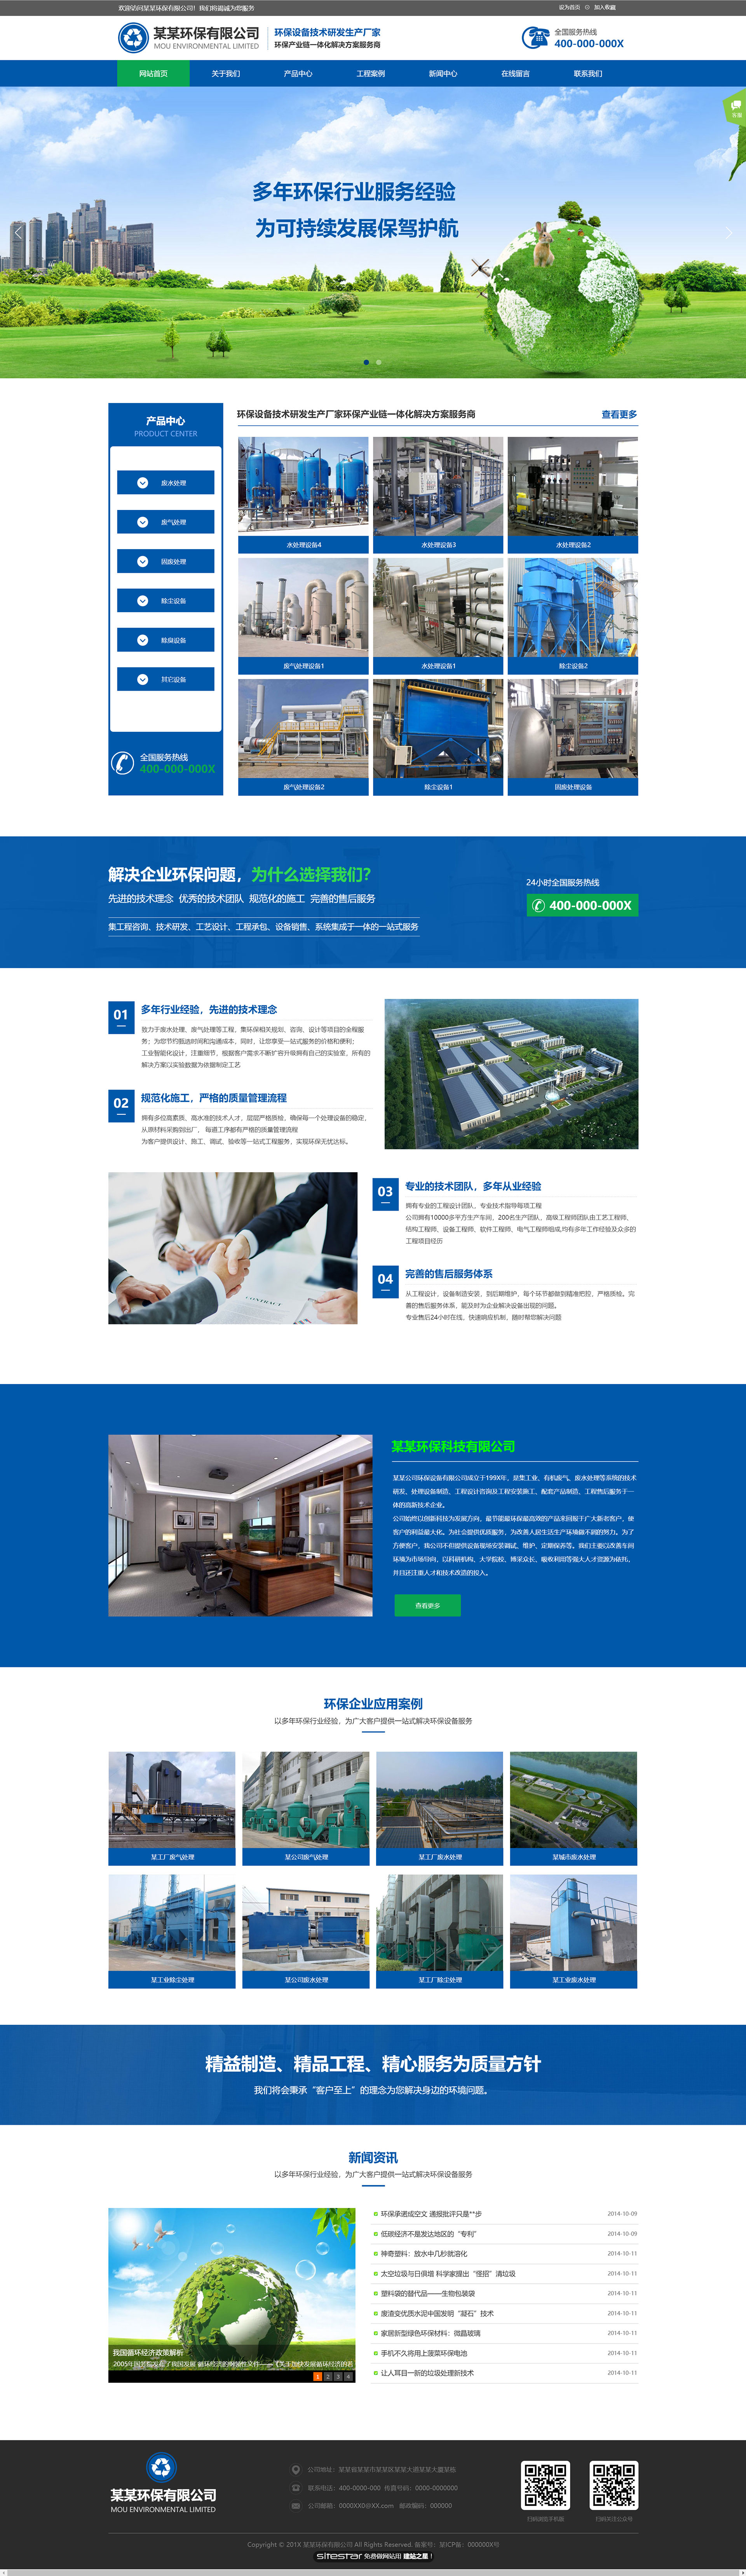 企业网站精美模板-environment-288